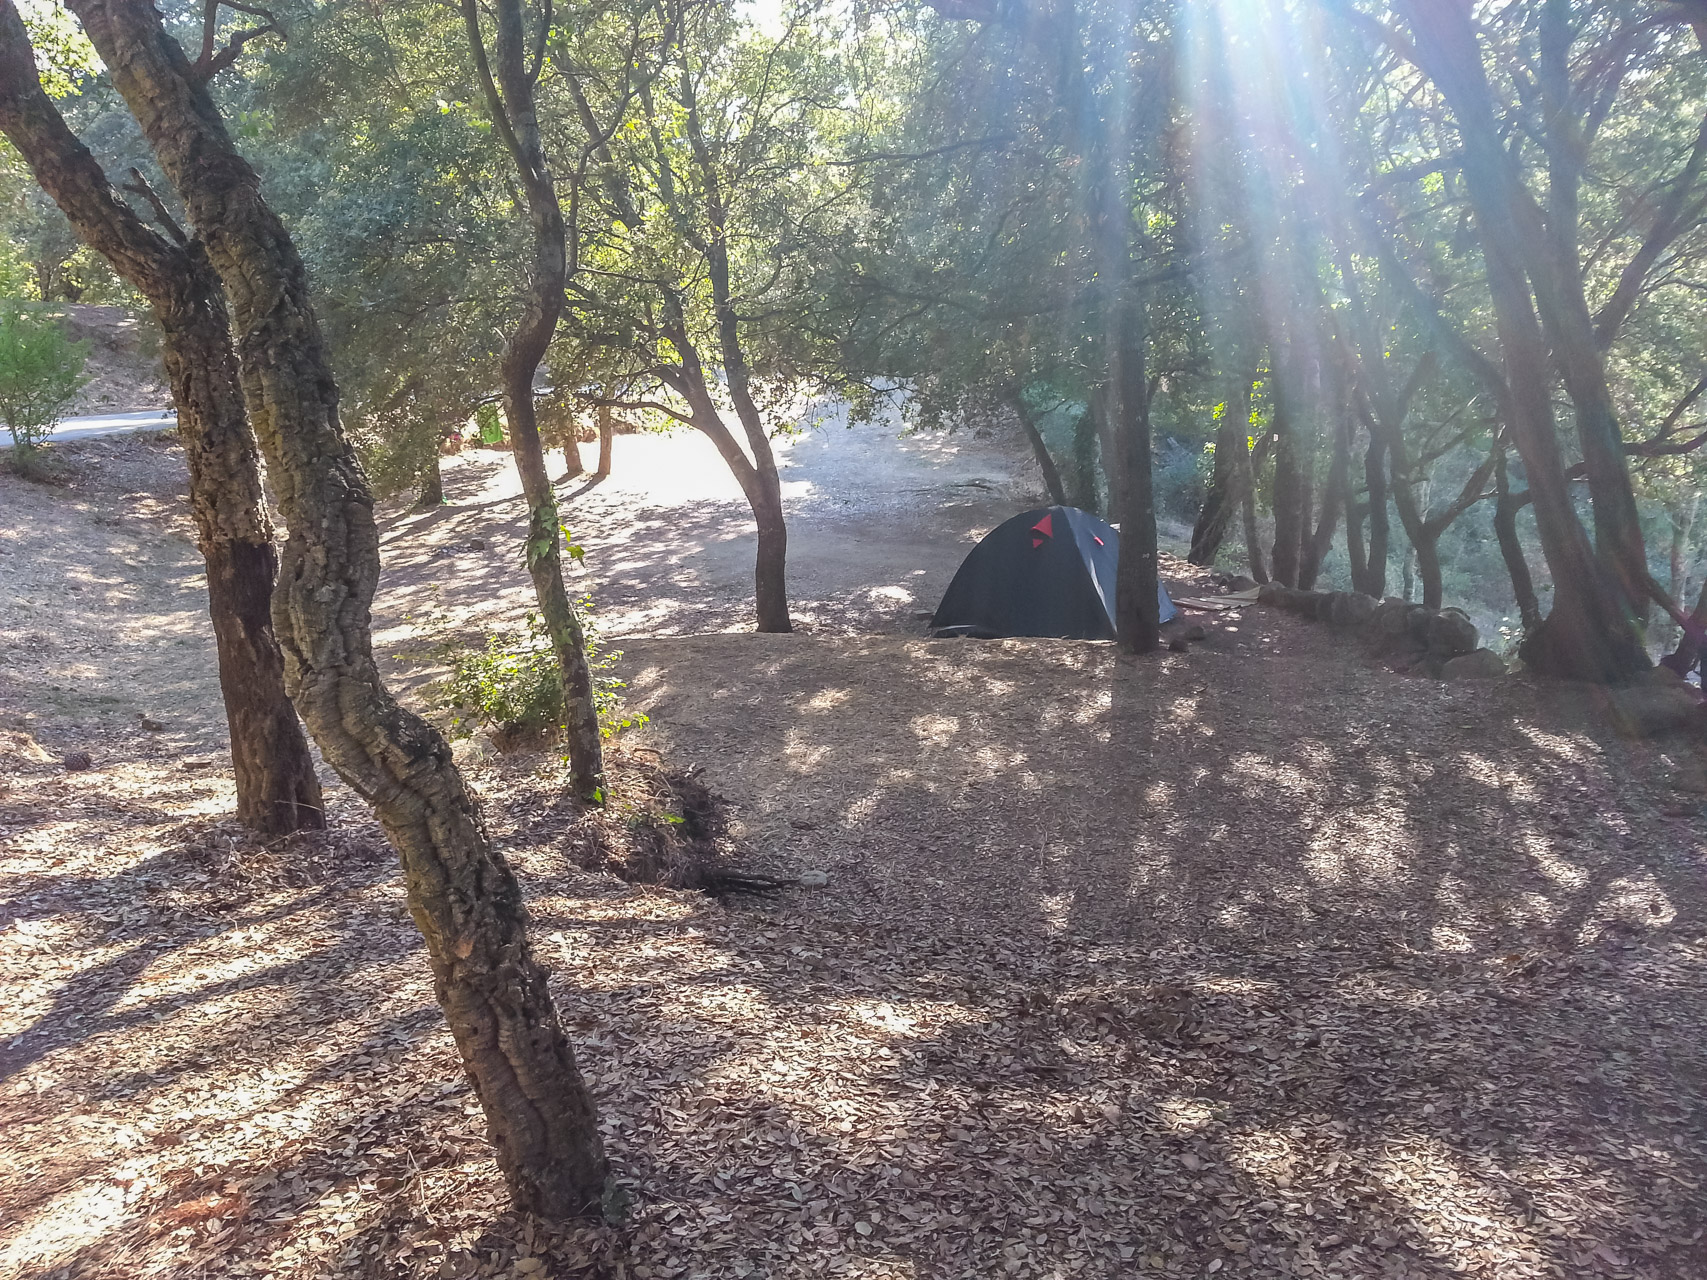 Camping Olva